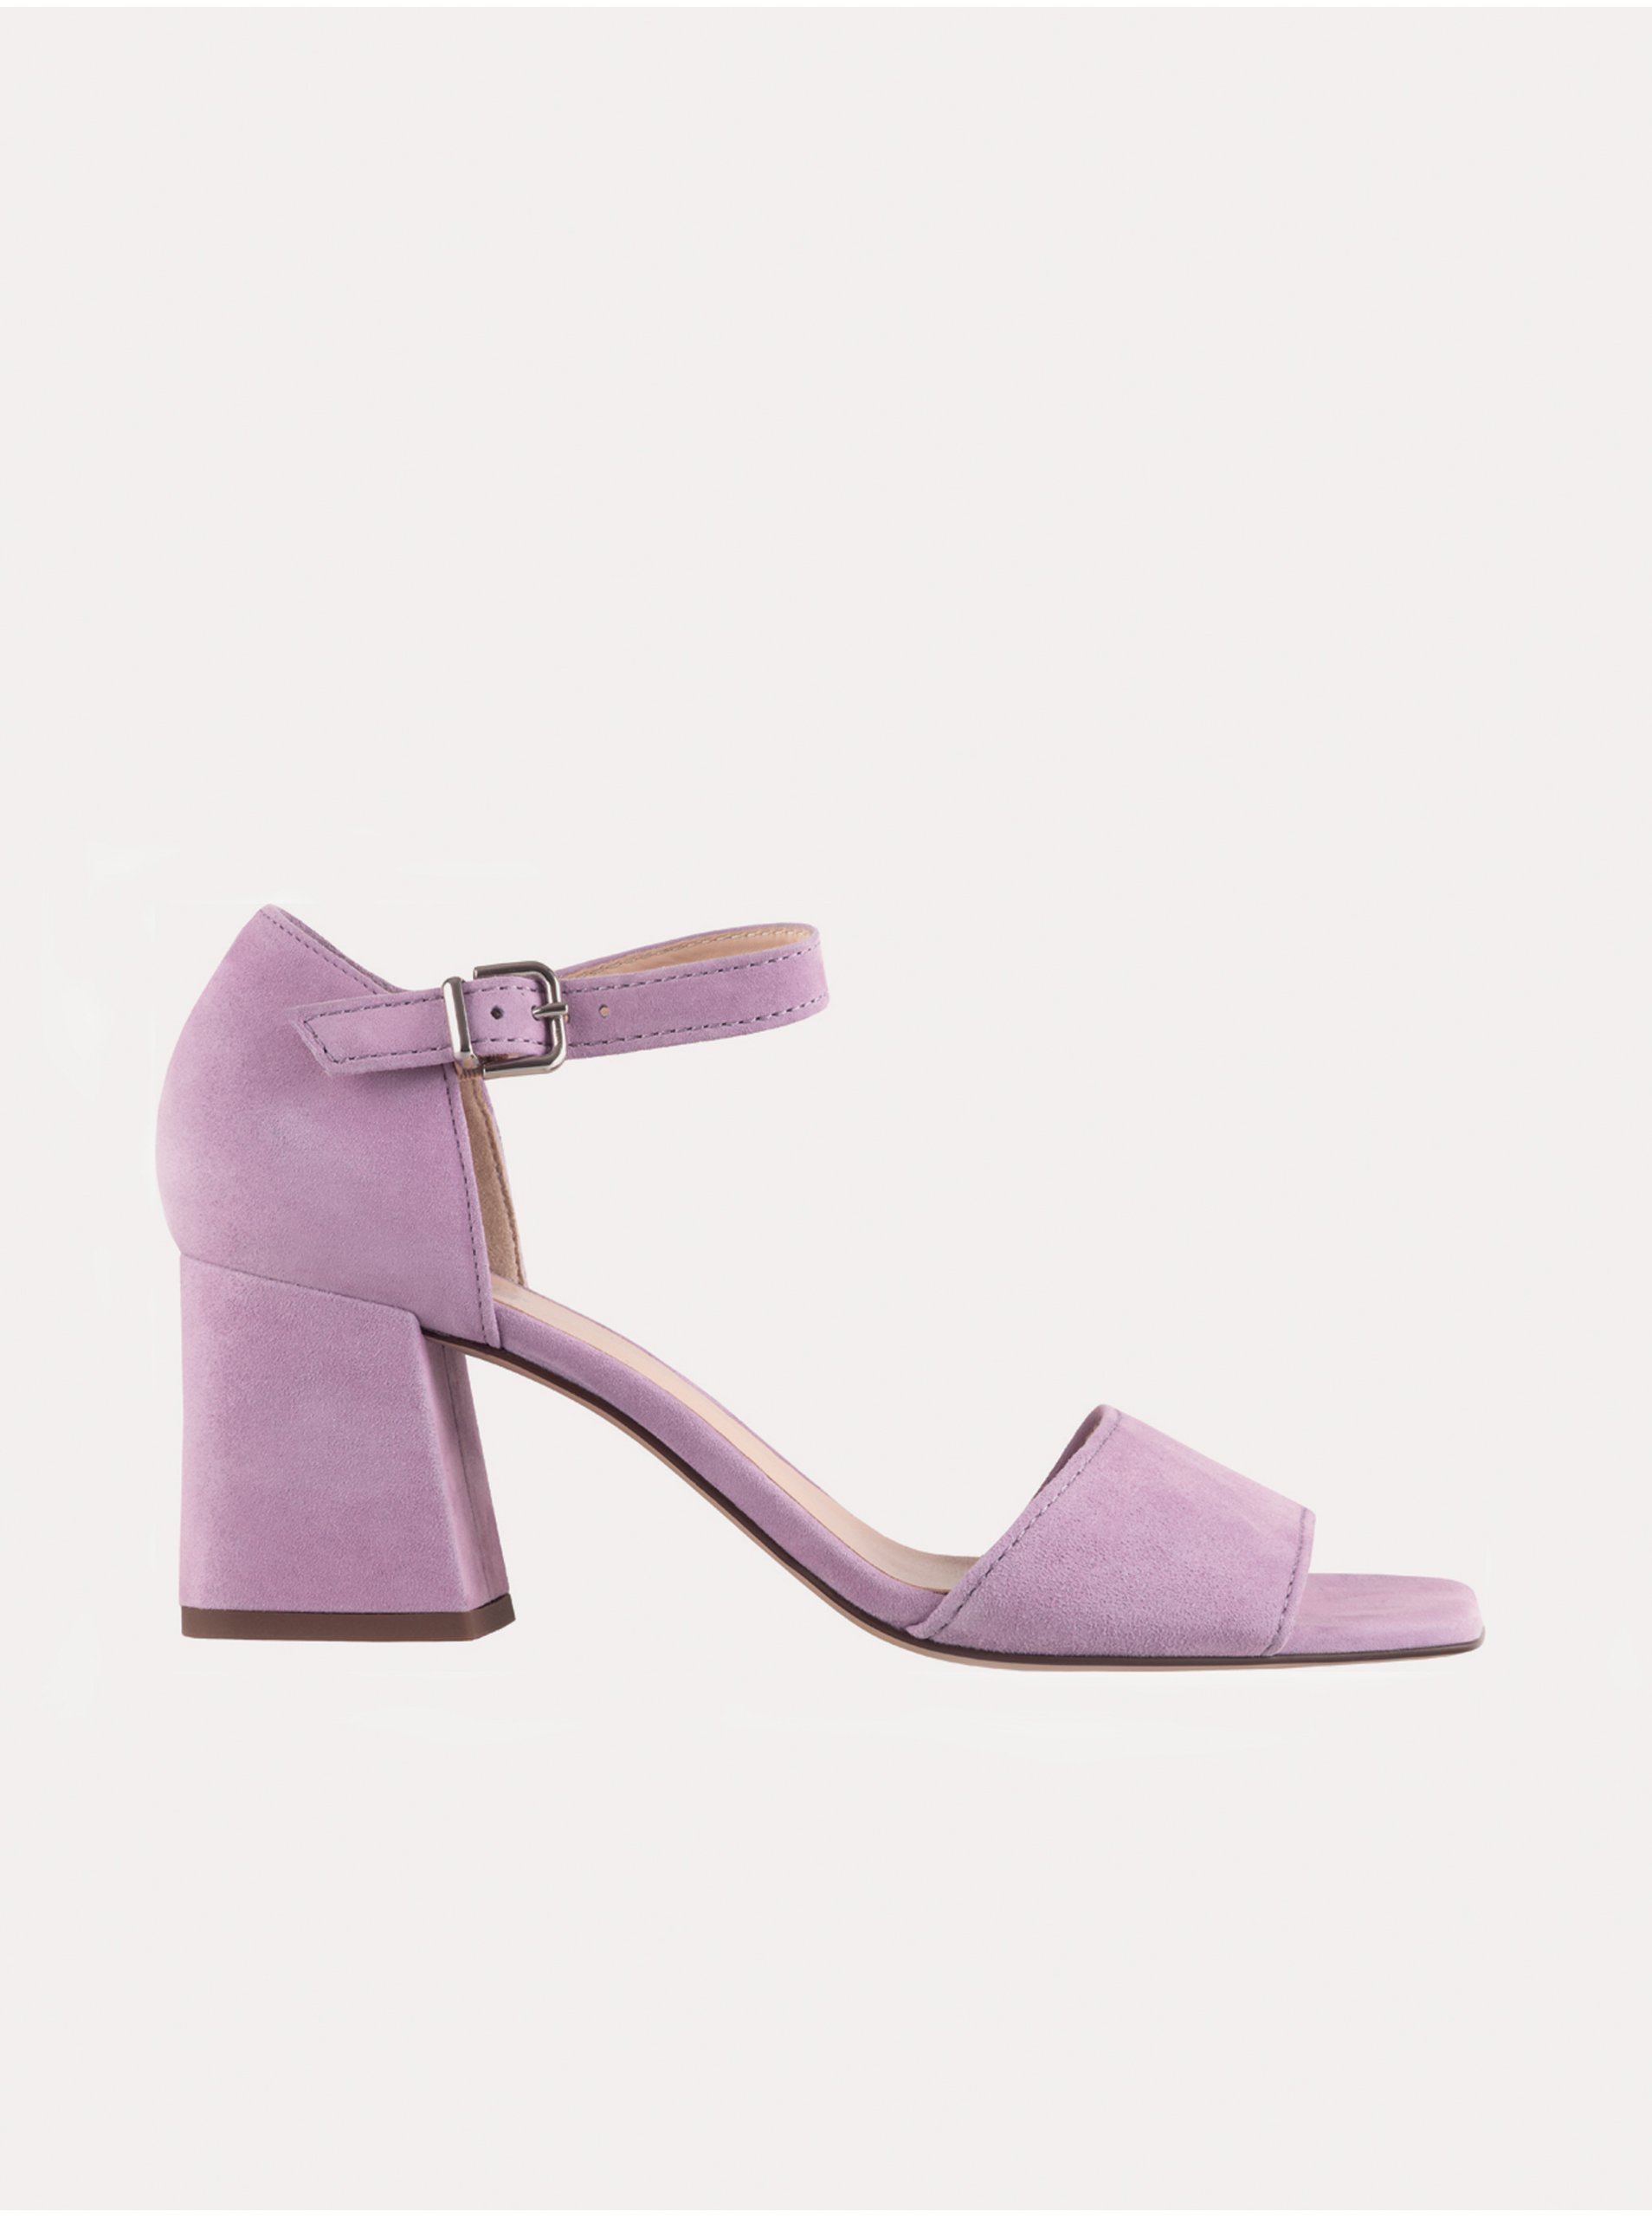 E-shop Světle fialové dámské kožené sandály na podpatku Högl Beatrice